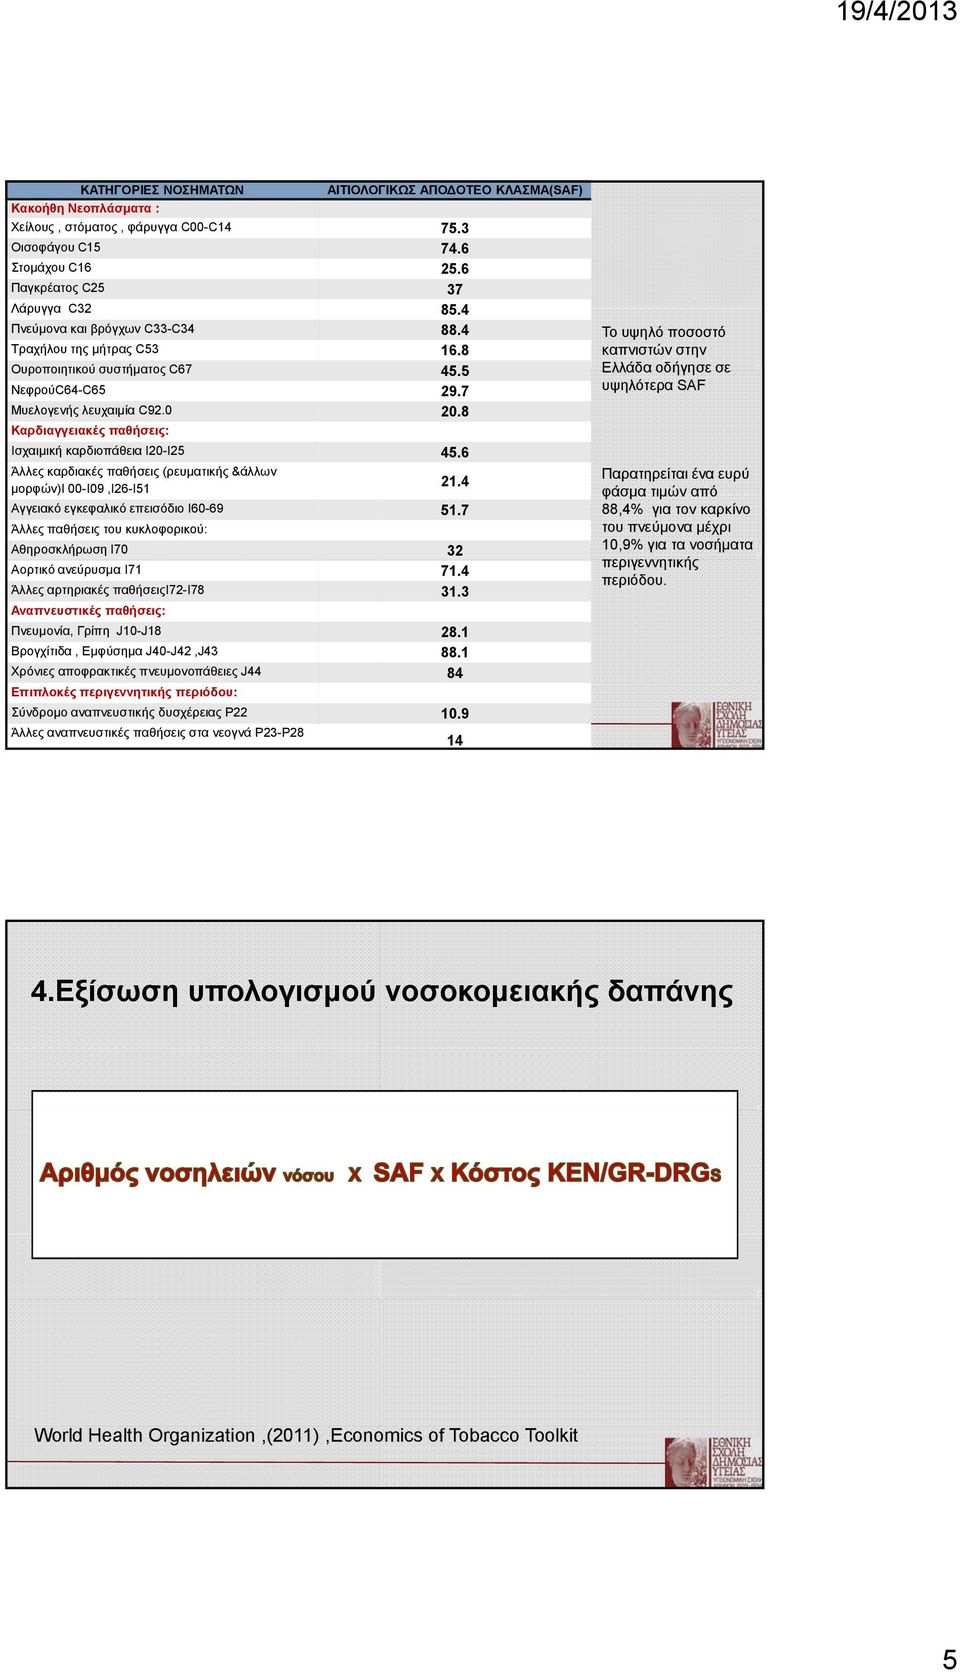 7 Ελλάδα οδήγησε σε υψηλότερα SAF Μυελογενής λευχαιμία C92.0 20.8 Καρδιαγγειακές παθήσεις: Ισχαιμική καρδιοπάθεια I20-I25 45.6 Άλλες καρδιακές παθήσεις (ρευματικής &άλλων μορφών)i 00-I09,I26-I51 21.